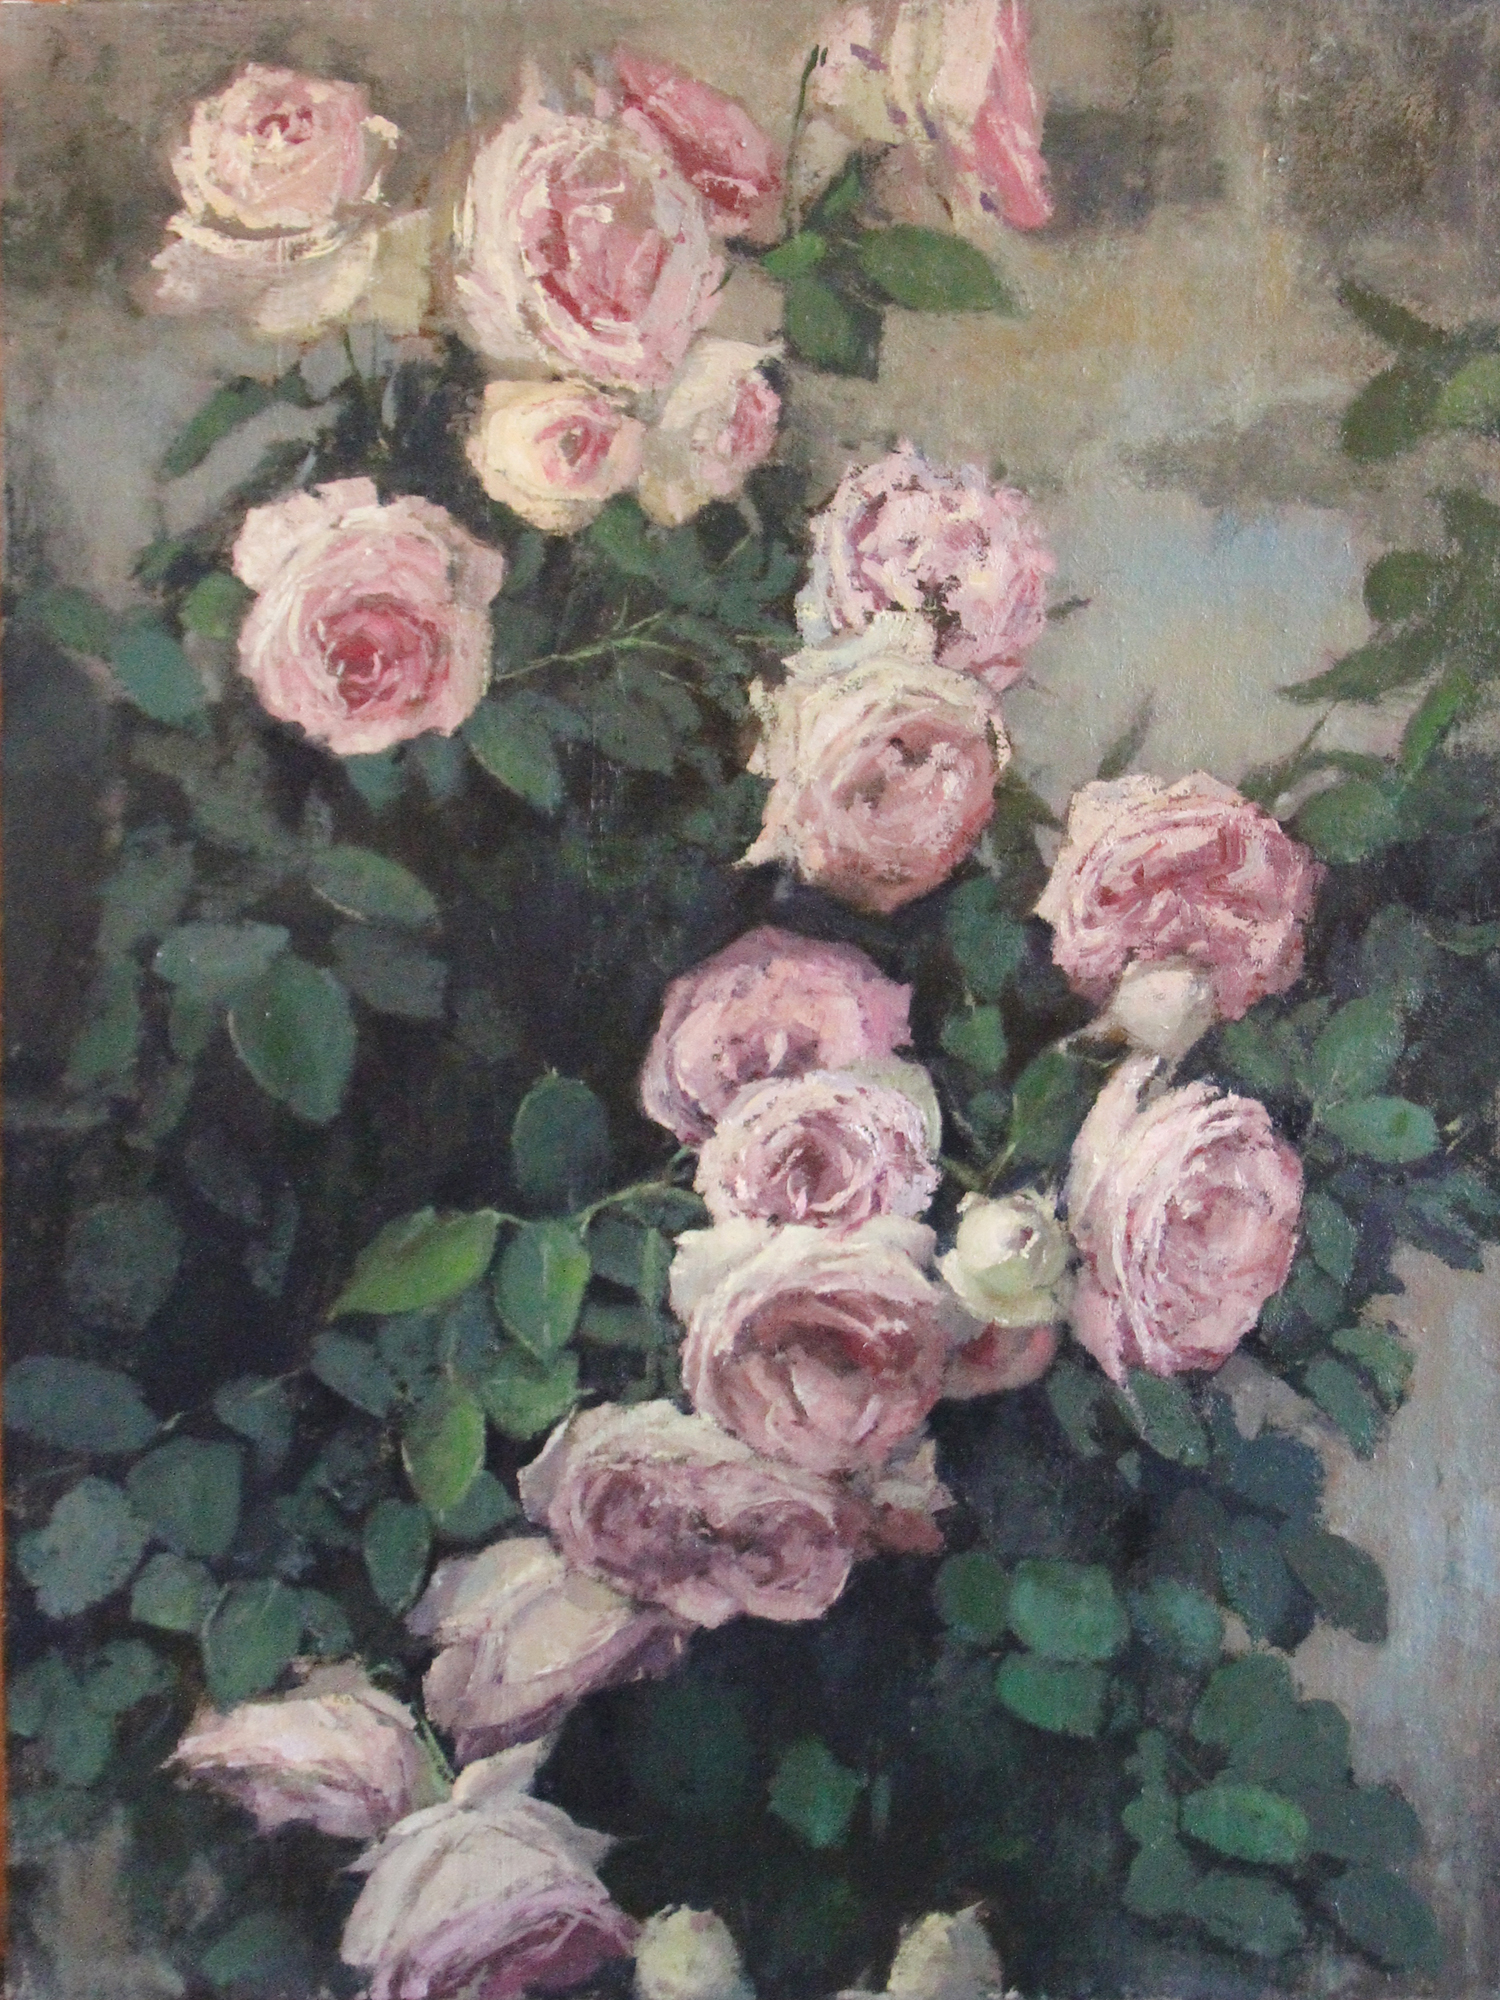 Chris Groves, "Italian Roses," 18 x 24 inches, oil on linen